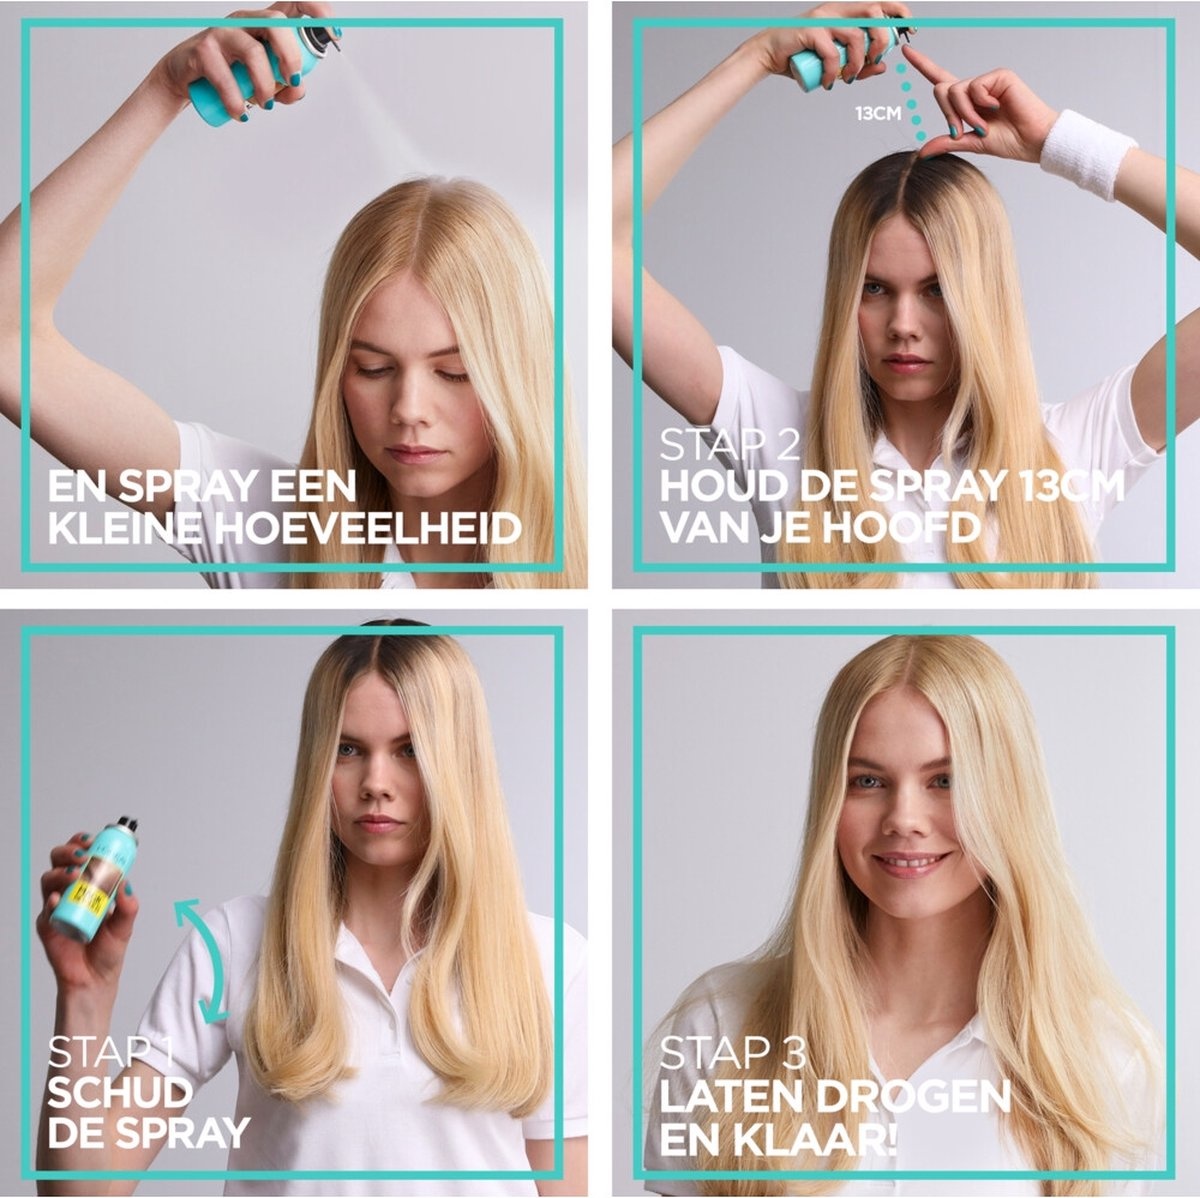 L'Oréal Paris Magic Retouch Spray Camouflage Excroissance - Blond Clair - 75 ml